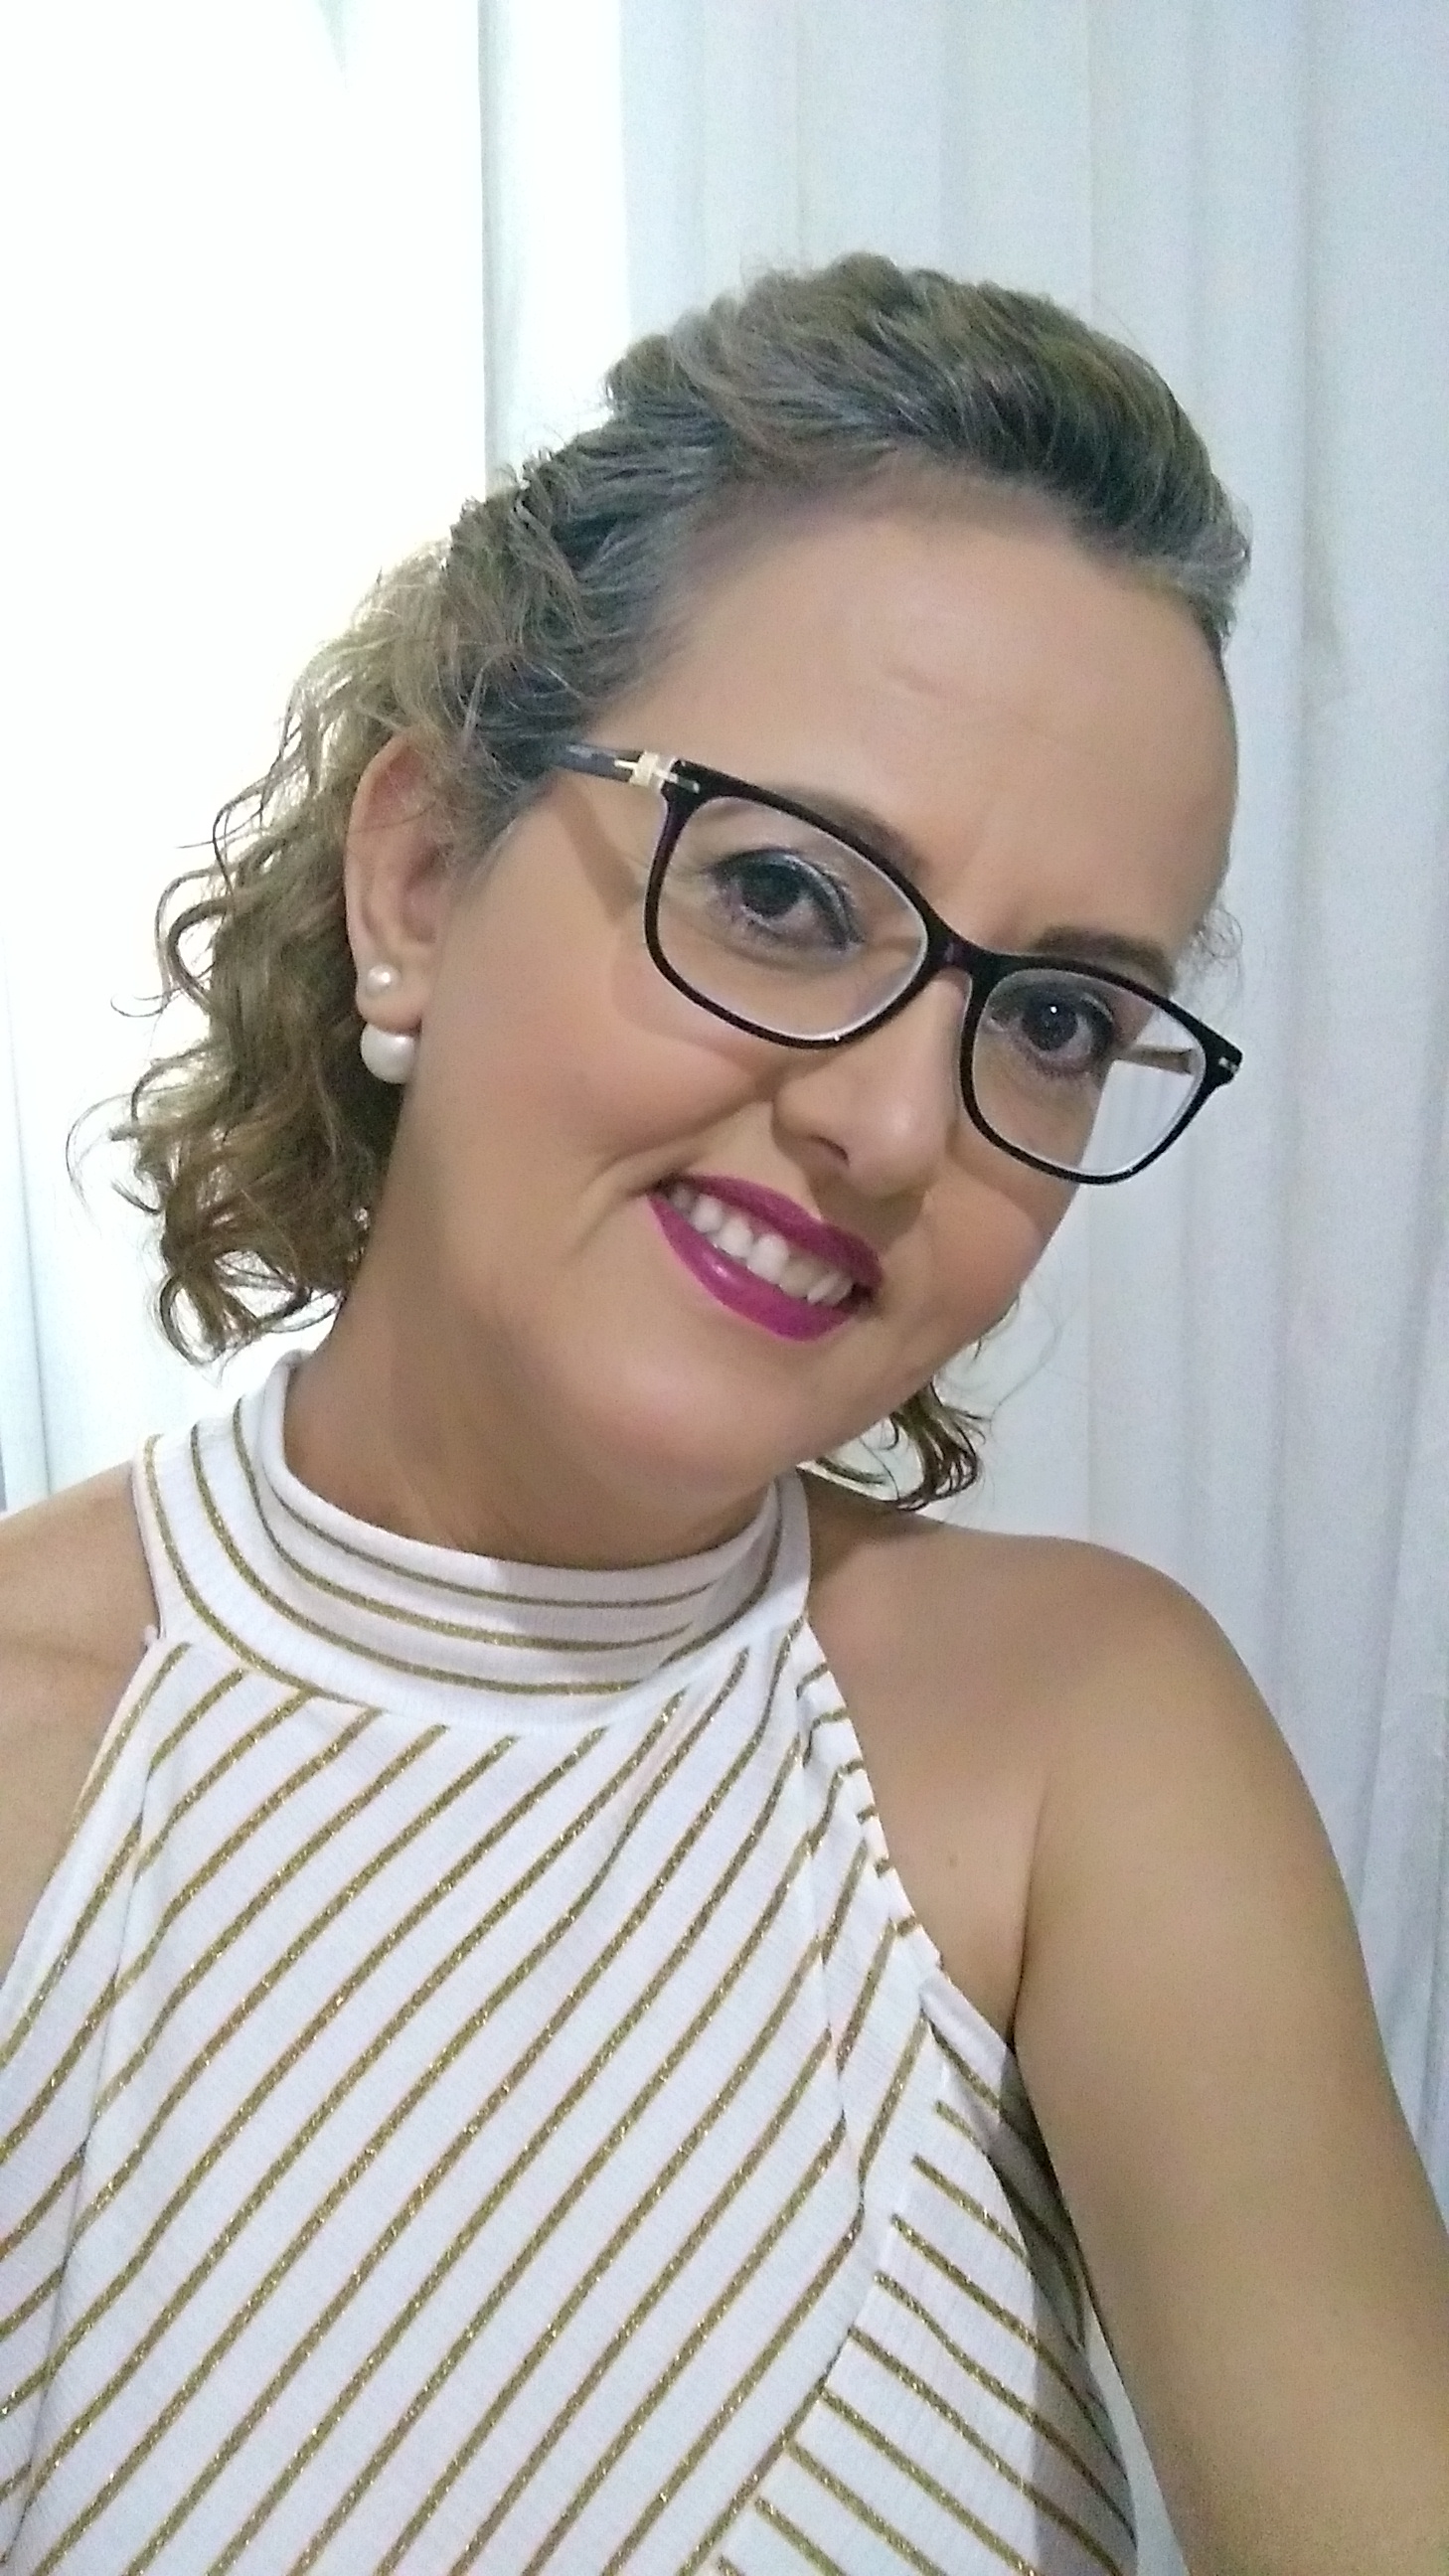 Mônica Gonçalves Araújo Sobre o Carreira Beauty